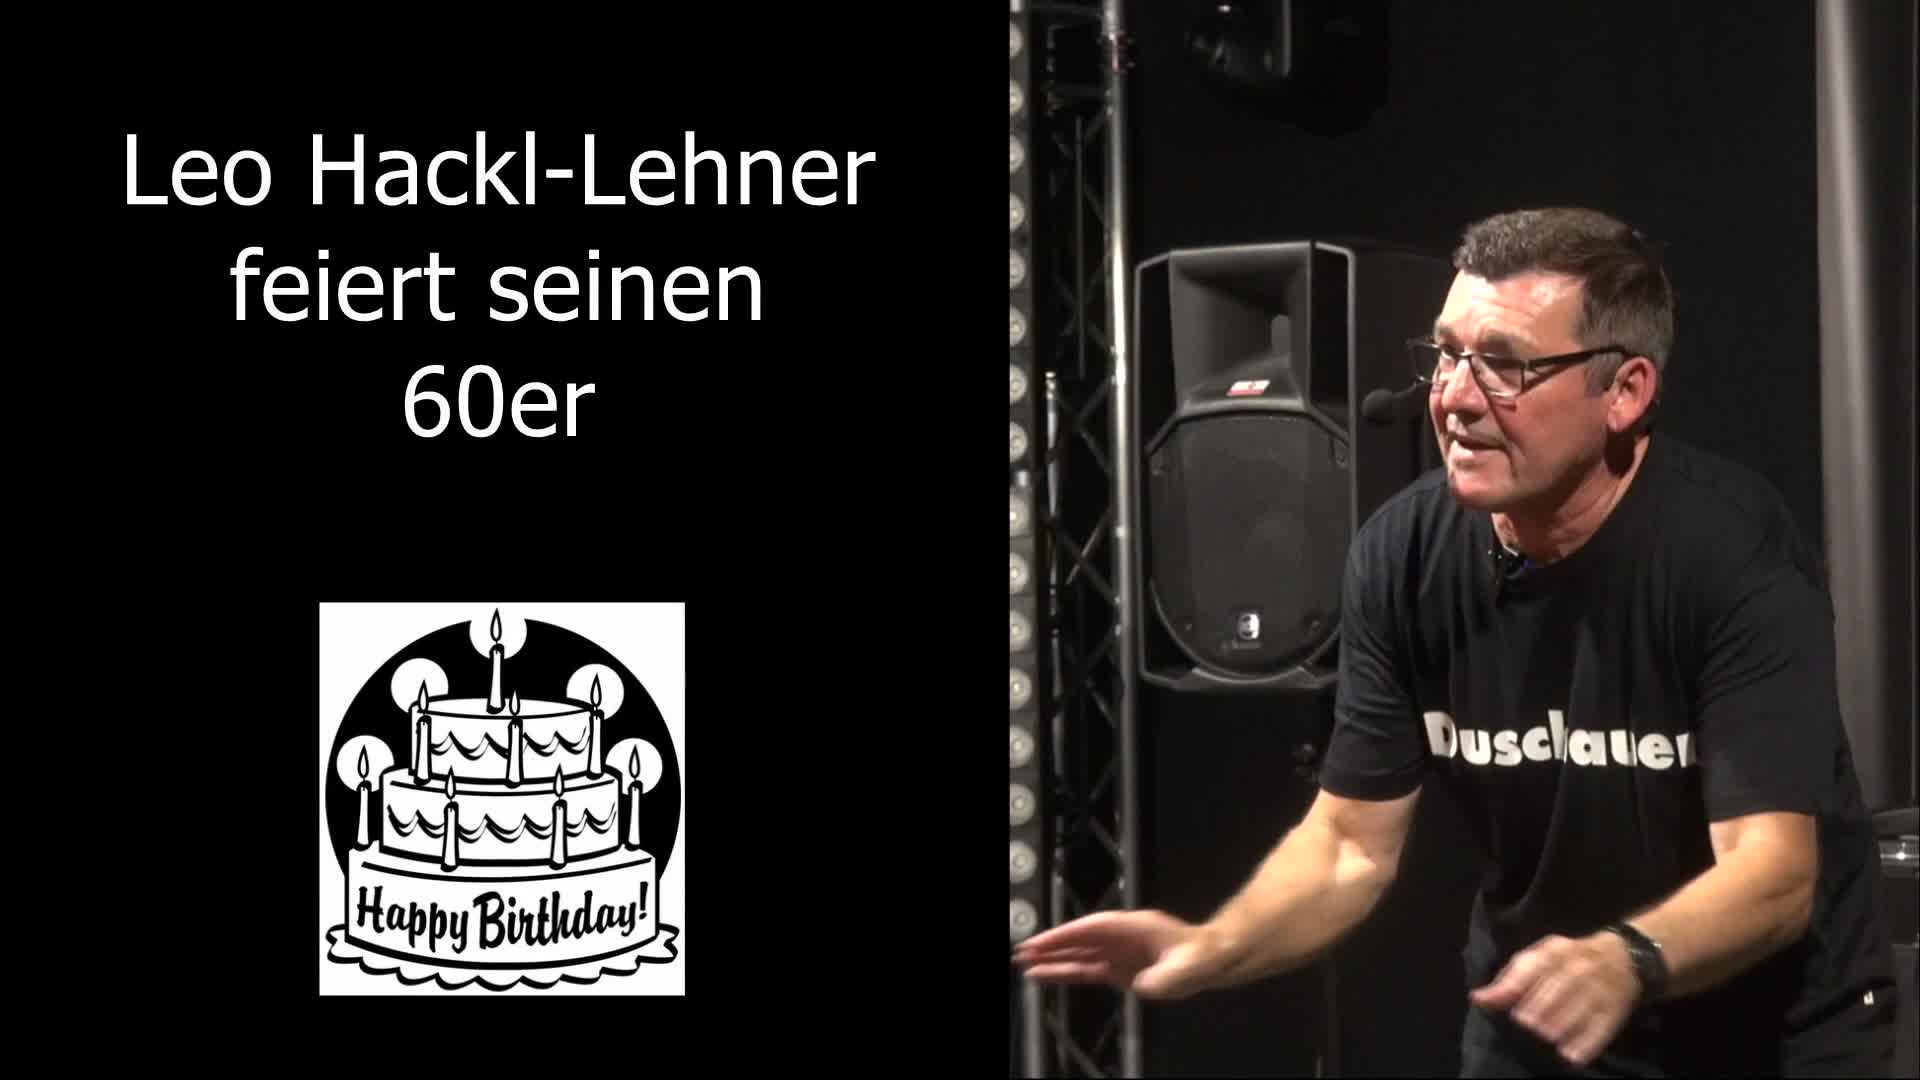 Leopold Hackl-Lehner feiert seinen 60er